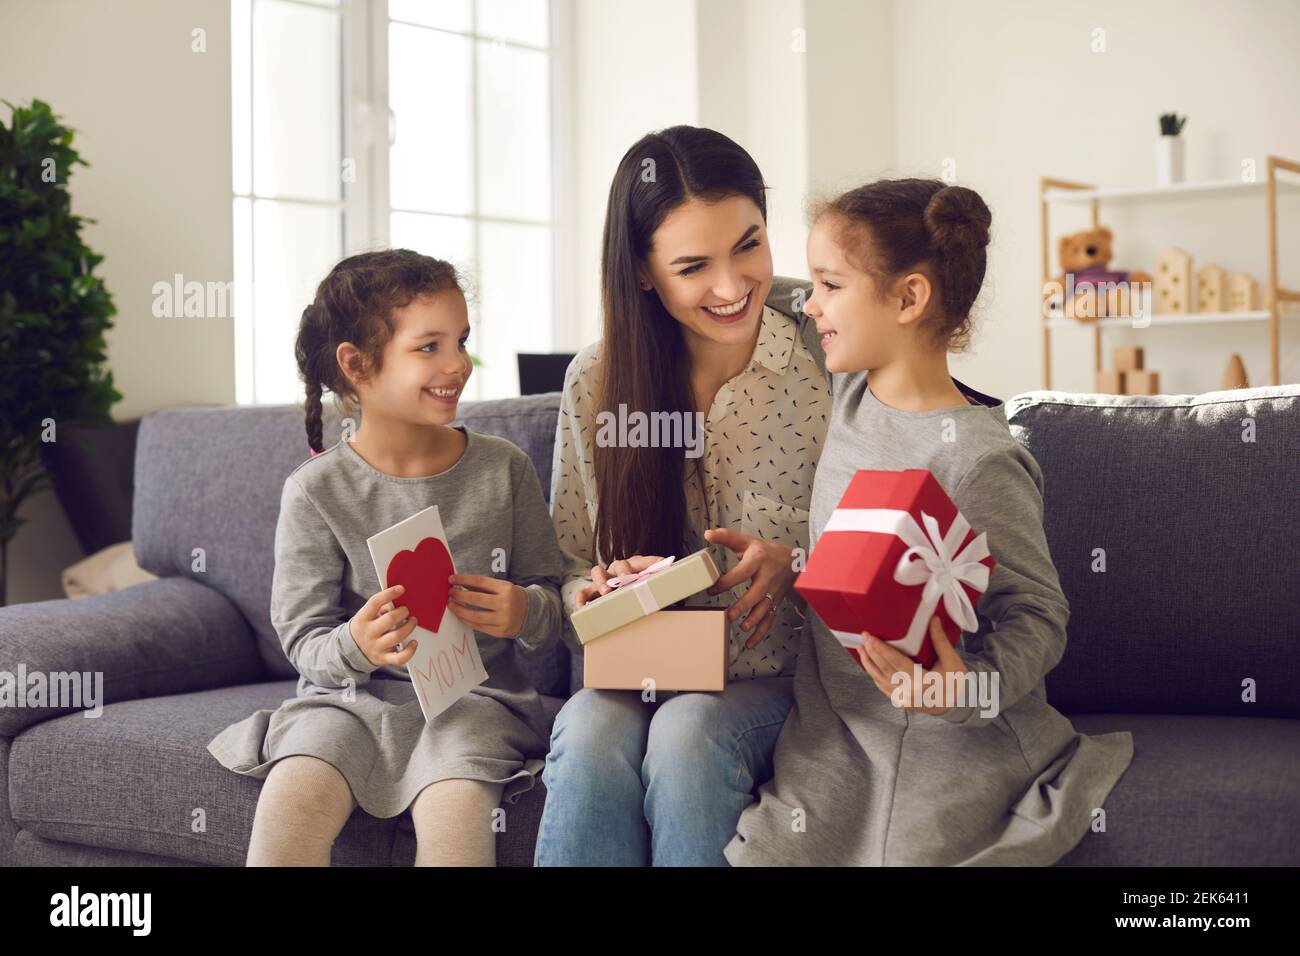 La madre felice riceve i regali e la cartolina fatta a mano dalle sue due figlie amorevoli. Foto Stock